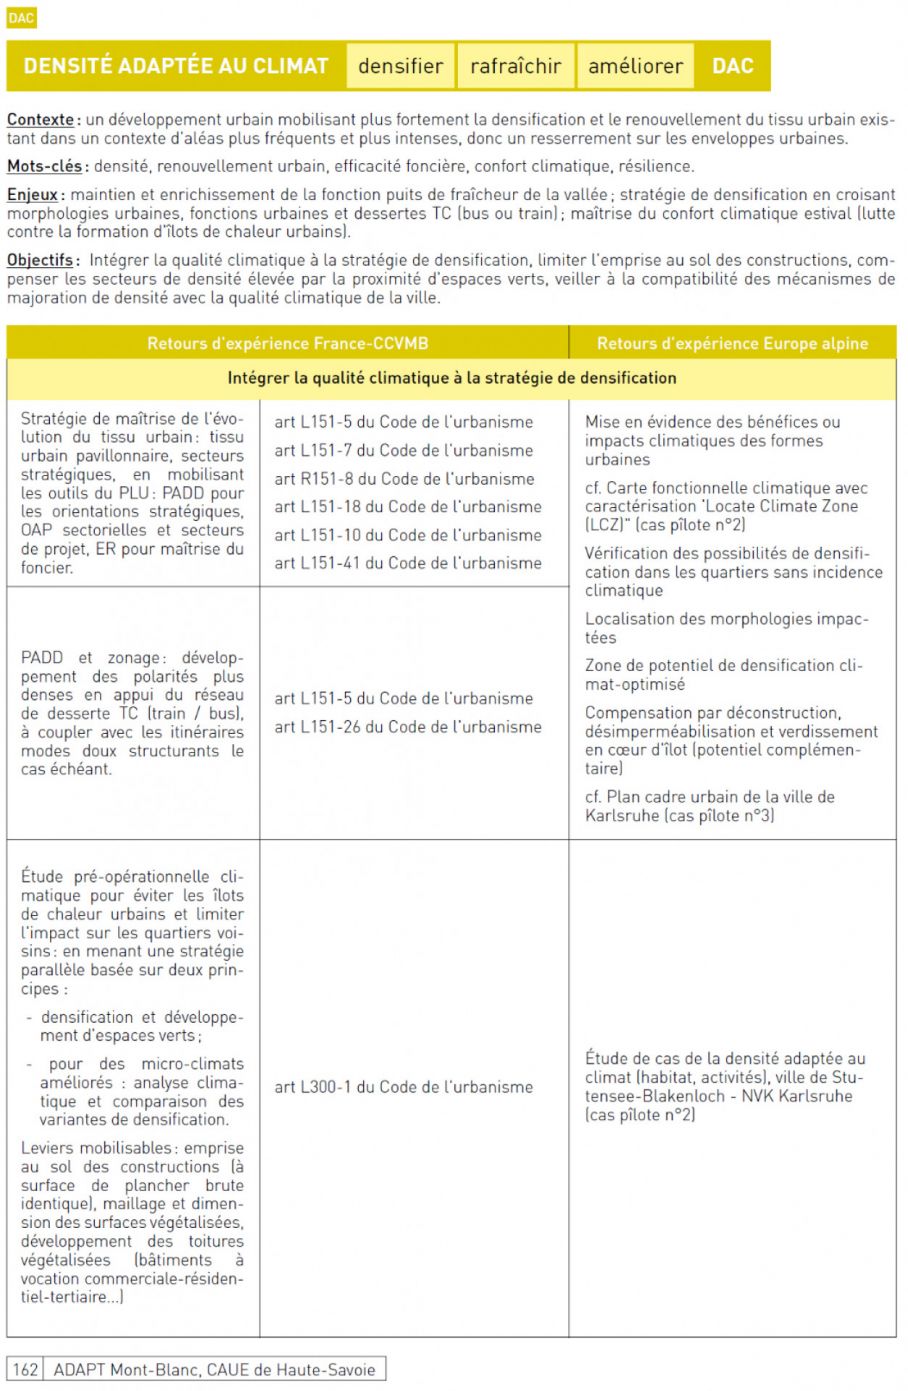 2/ Boîte à outil « adaptation au changement climatique » - CAUE Haute-Savoie extrait p162 (synthèse) et schéma : vers une transition climatique des documents de planification sur l’EMB